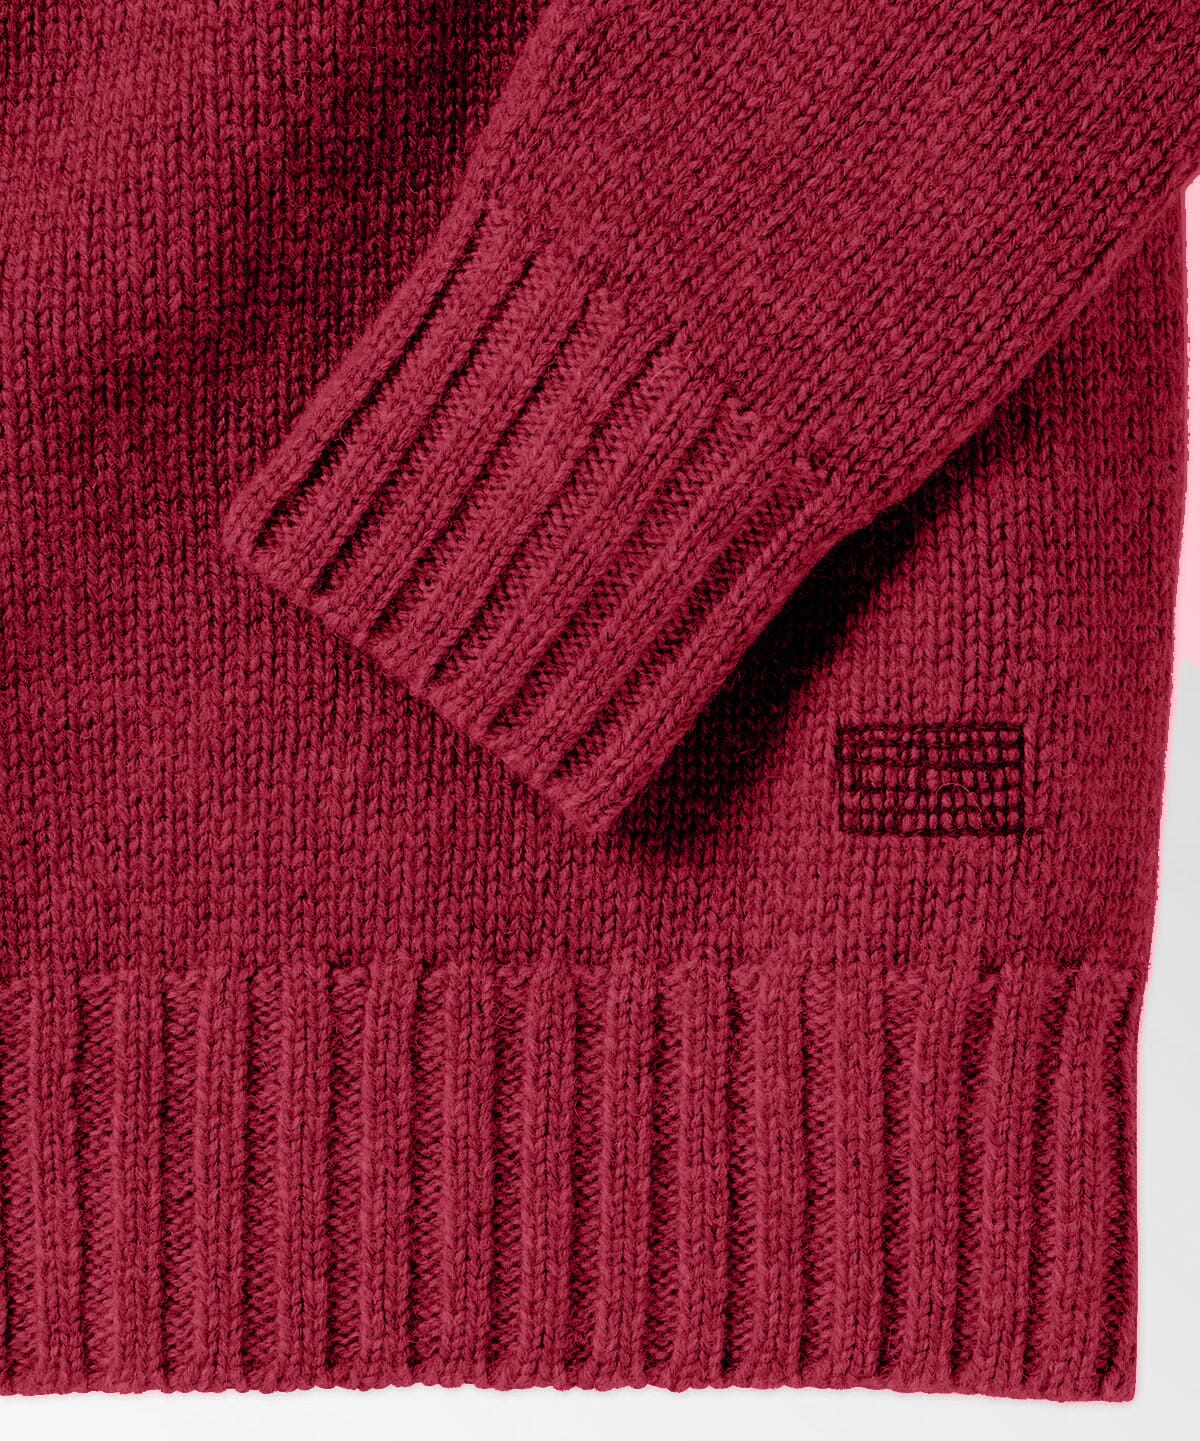 Edisto Crew Sweater Sweaters OOBE BRAND 